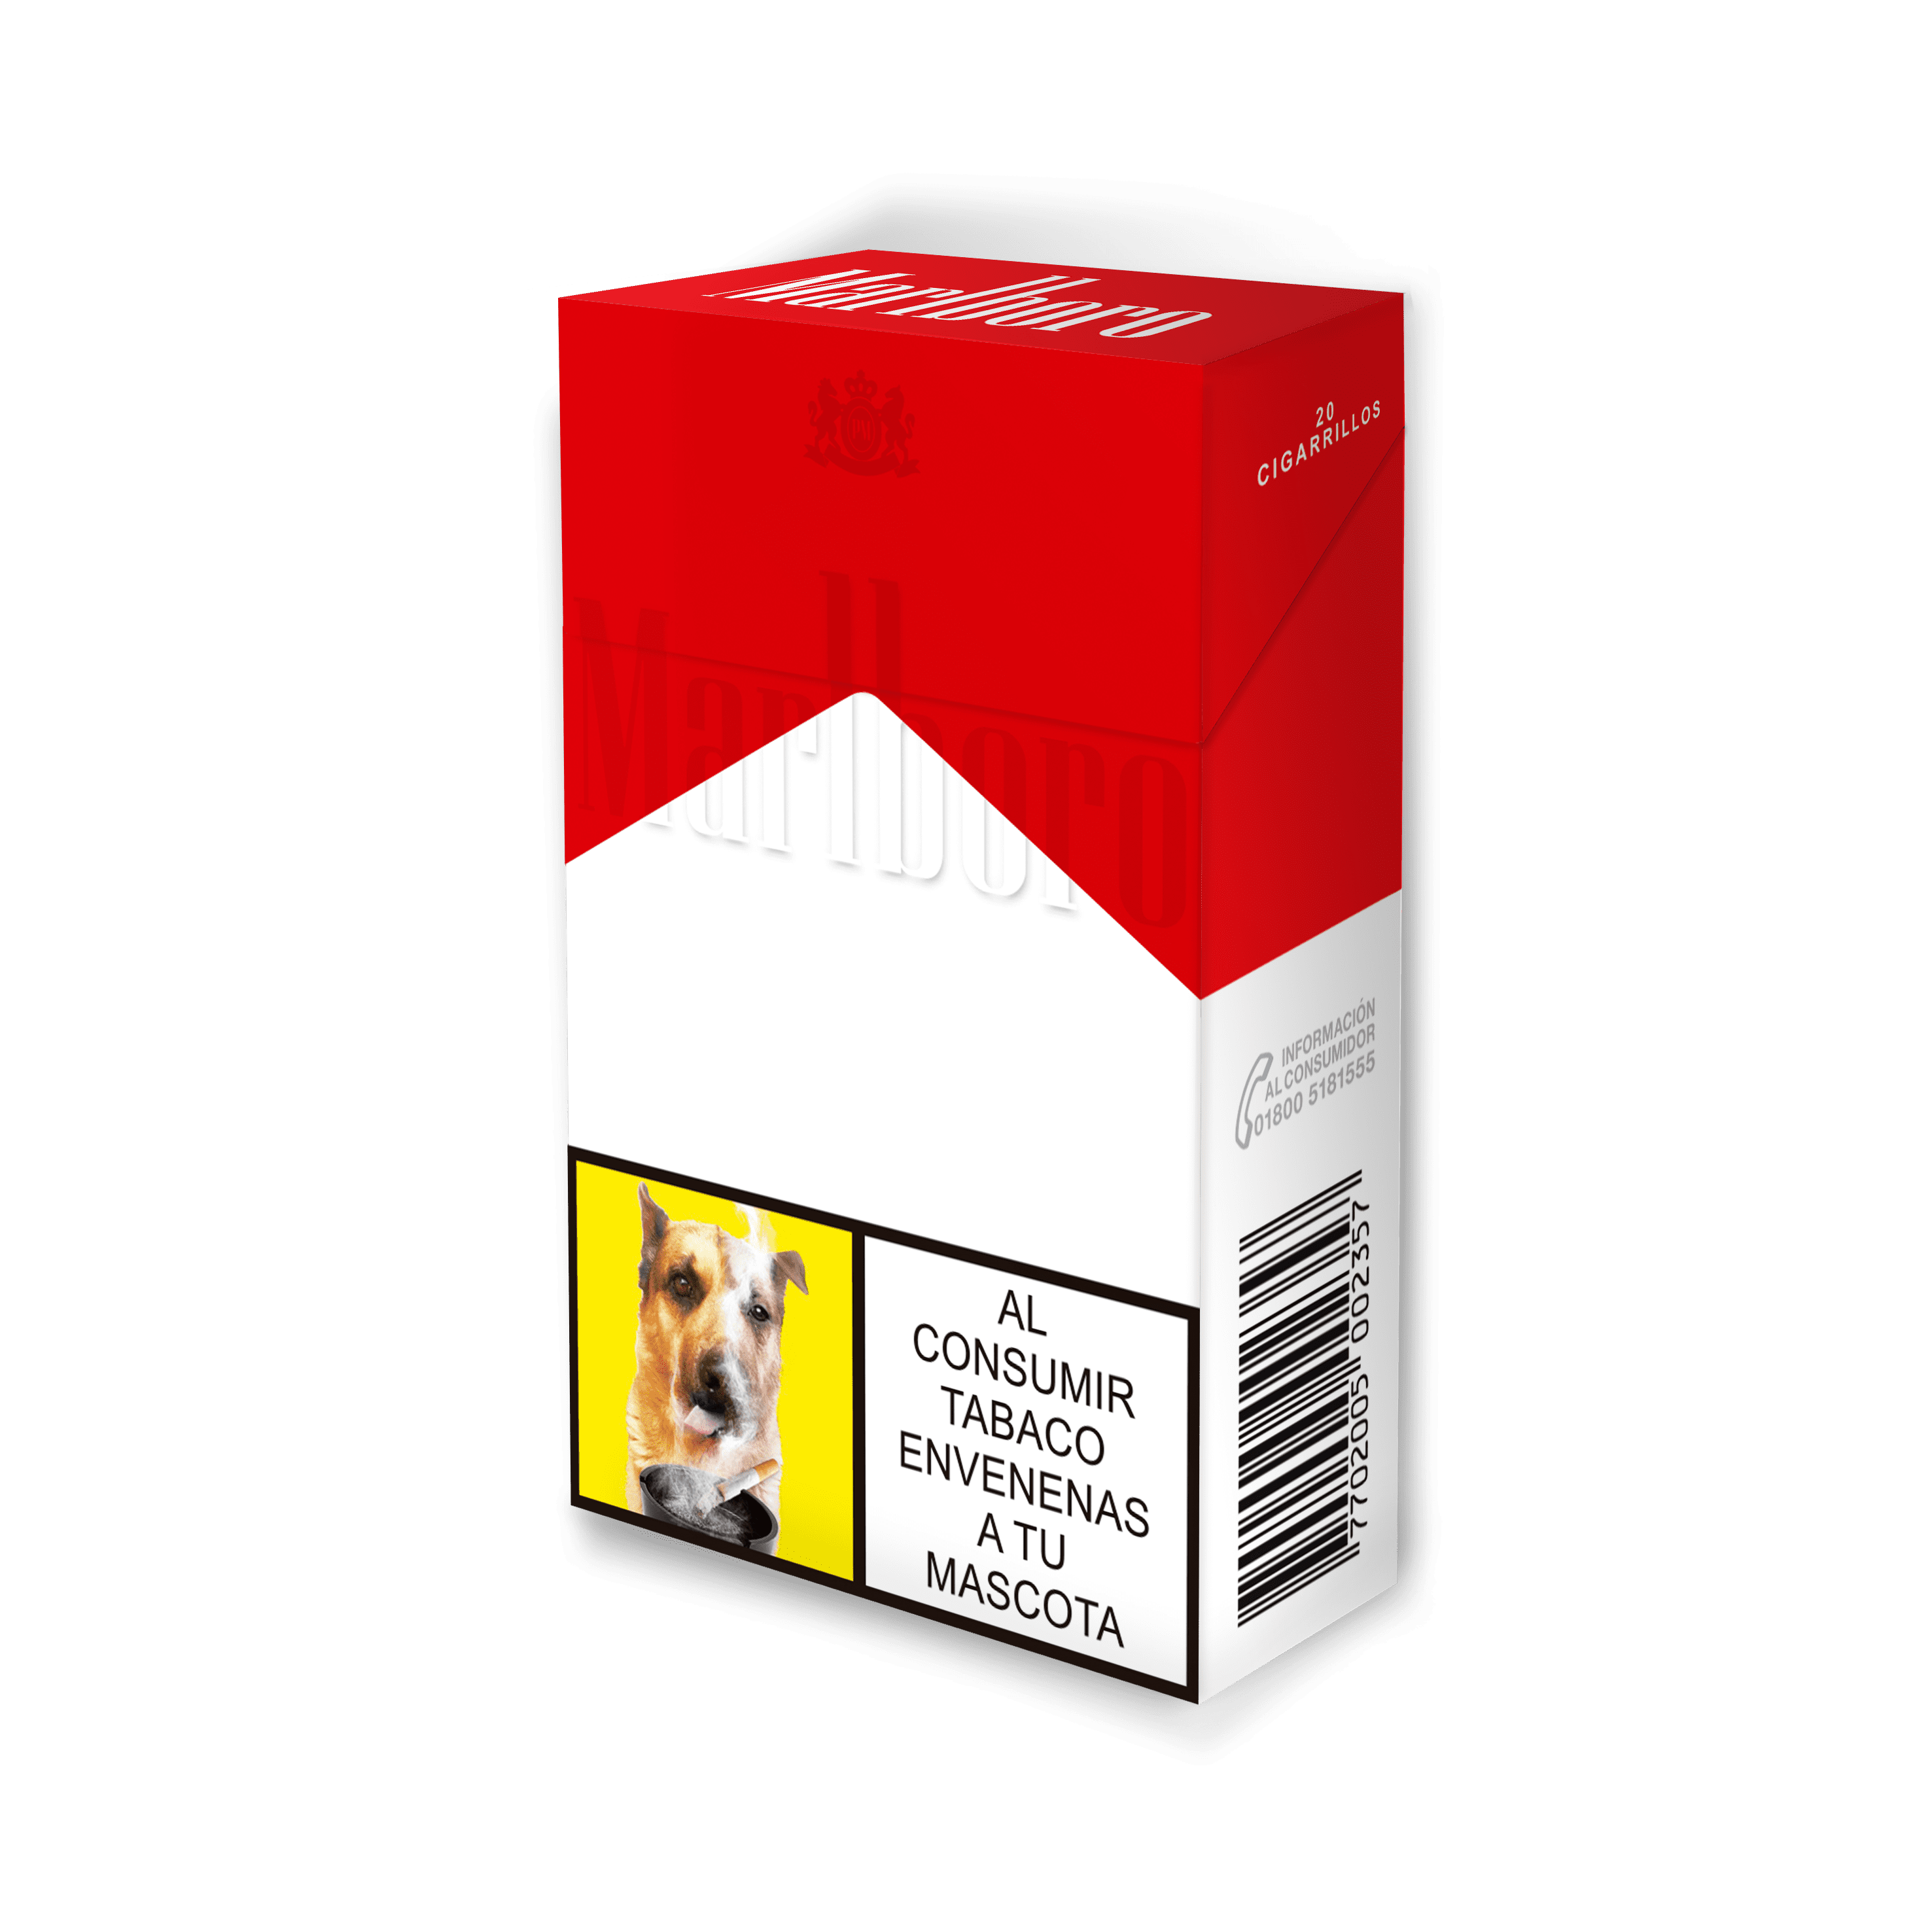 Cigarrillo Marlboro Rojo 2.0 Dorado x20cig Nueva Presentación